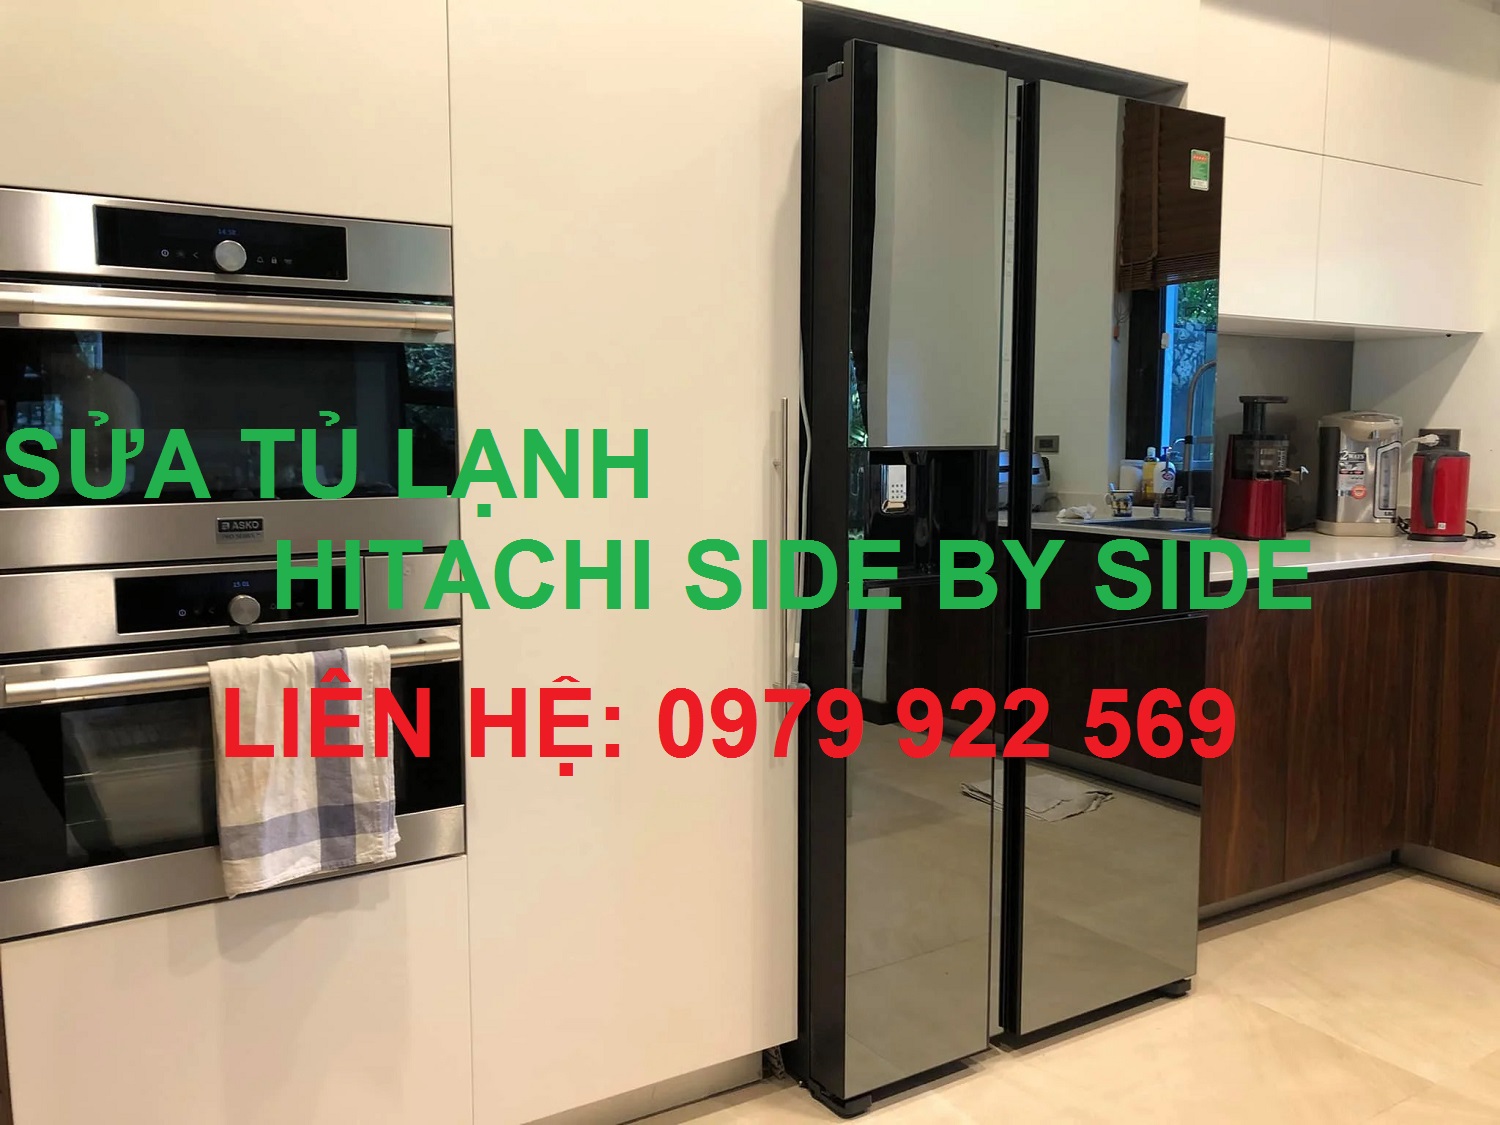 Tổng Hợp Biến Nhiệt Độ Ngăn Đông Tủ Lạnh Hitachi Side By Side